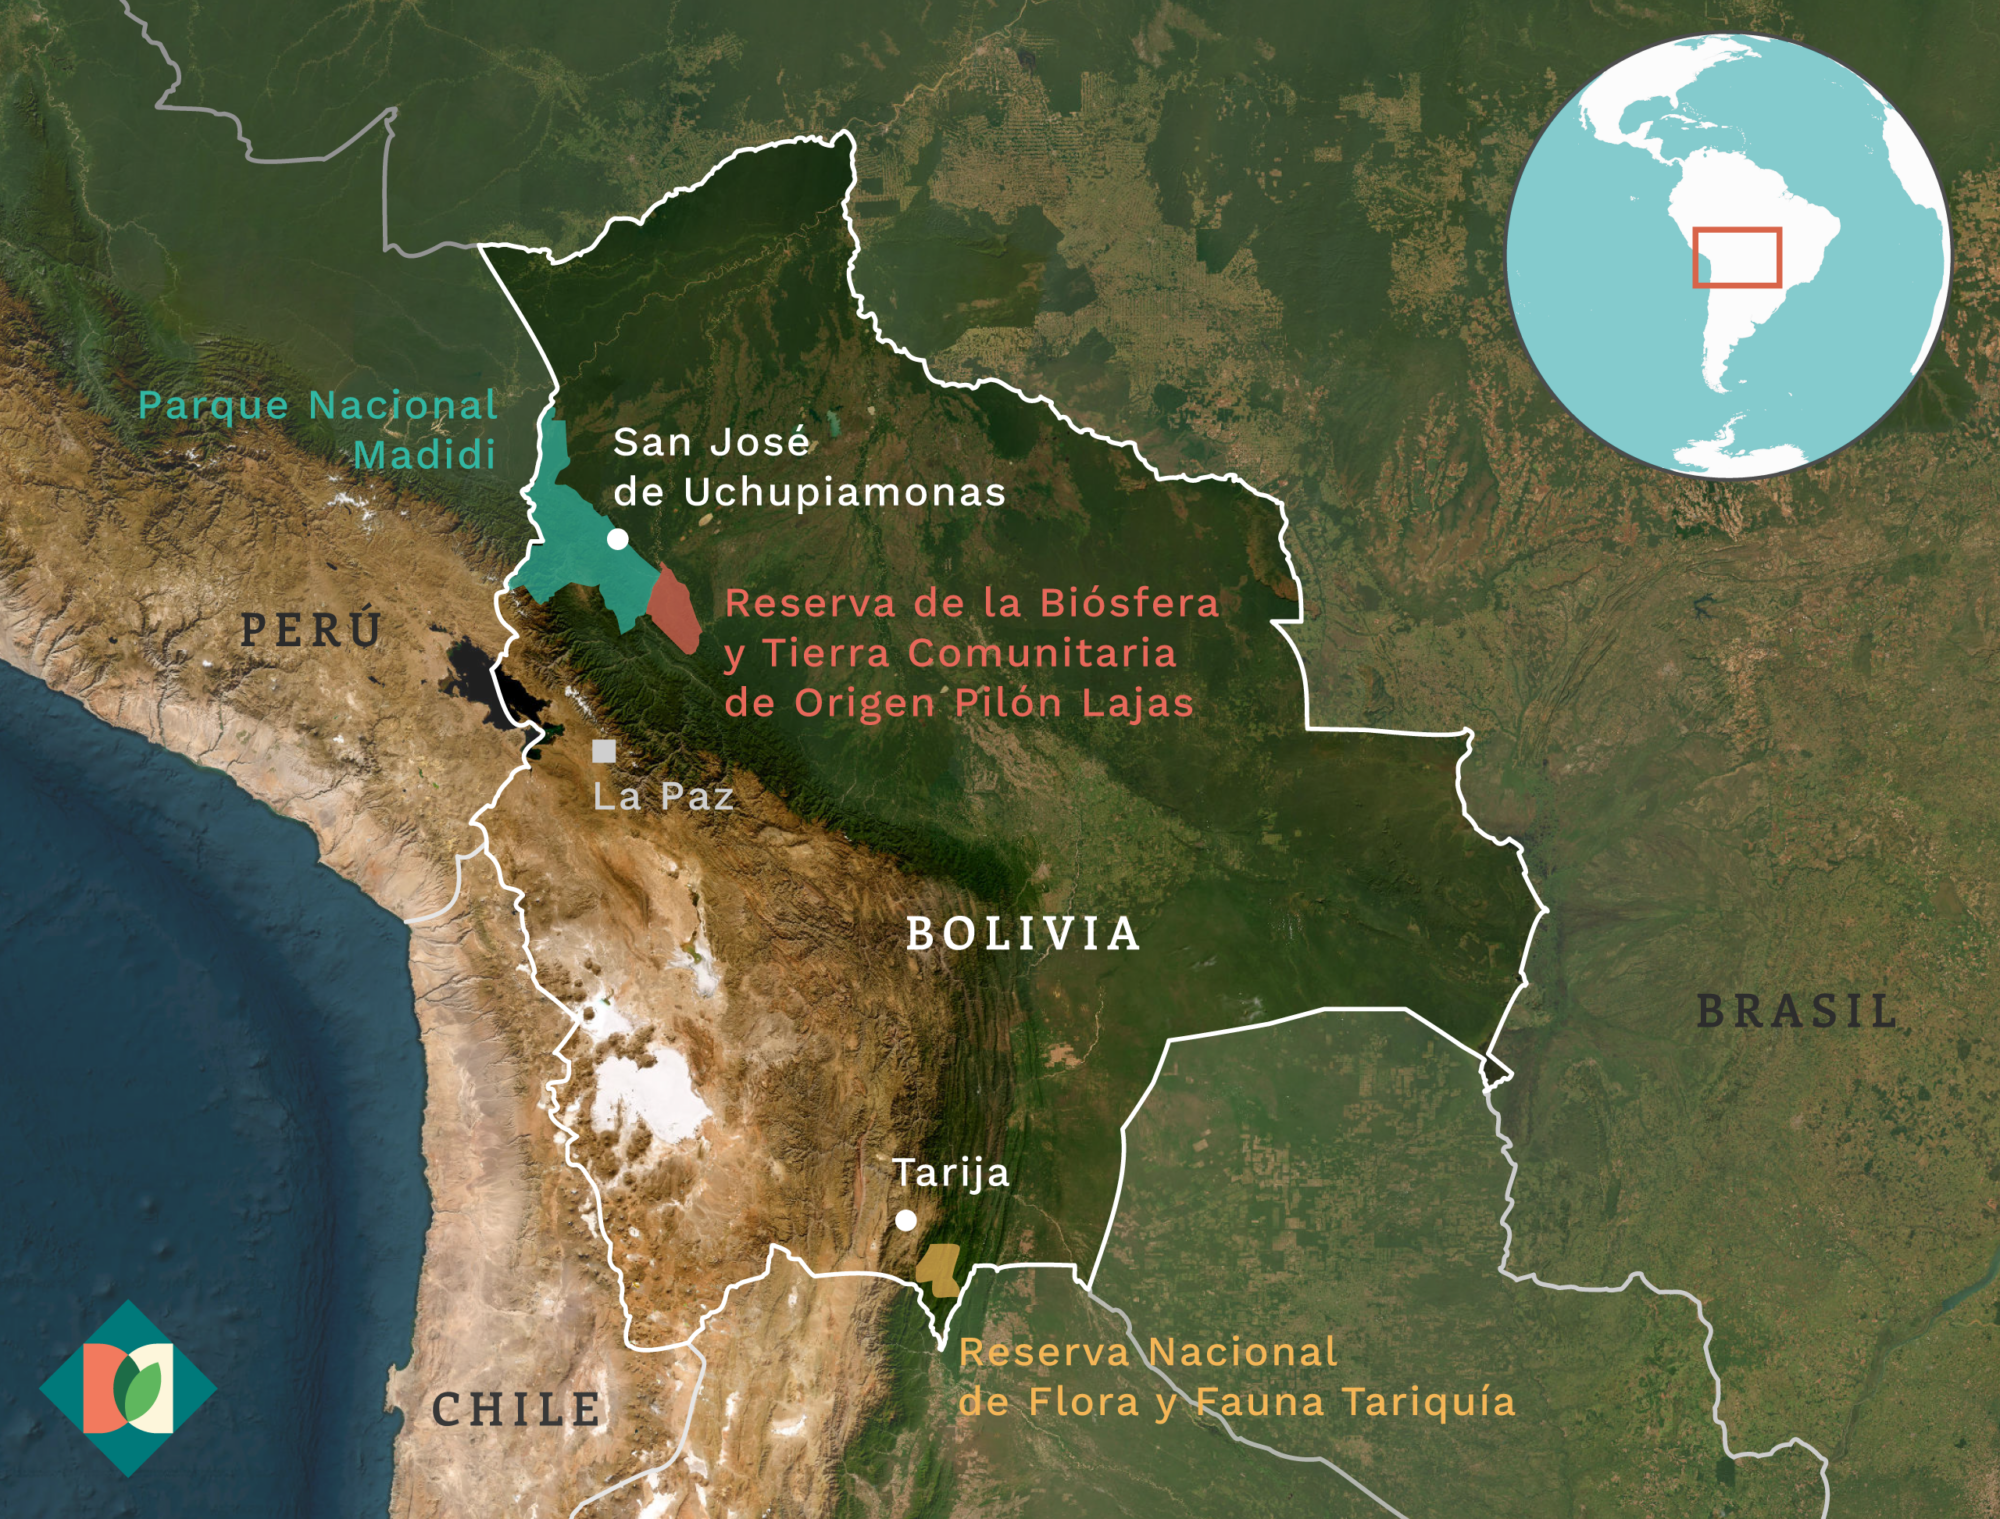 Mapa que muestra la ubicación del parque nacional Madidi, la reserva Tariquía y la reserva Lajas